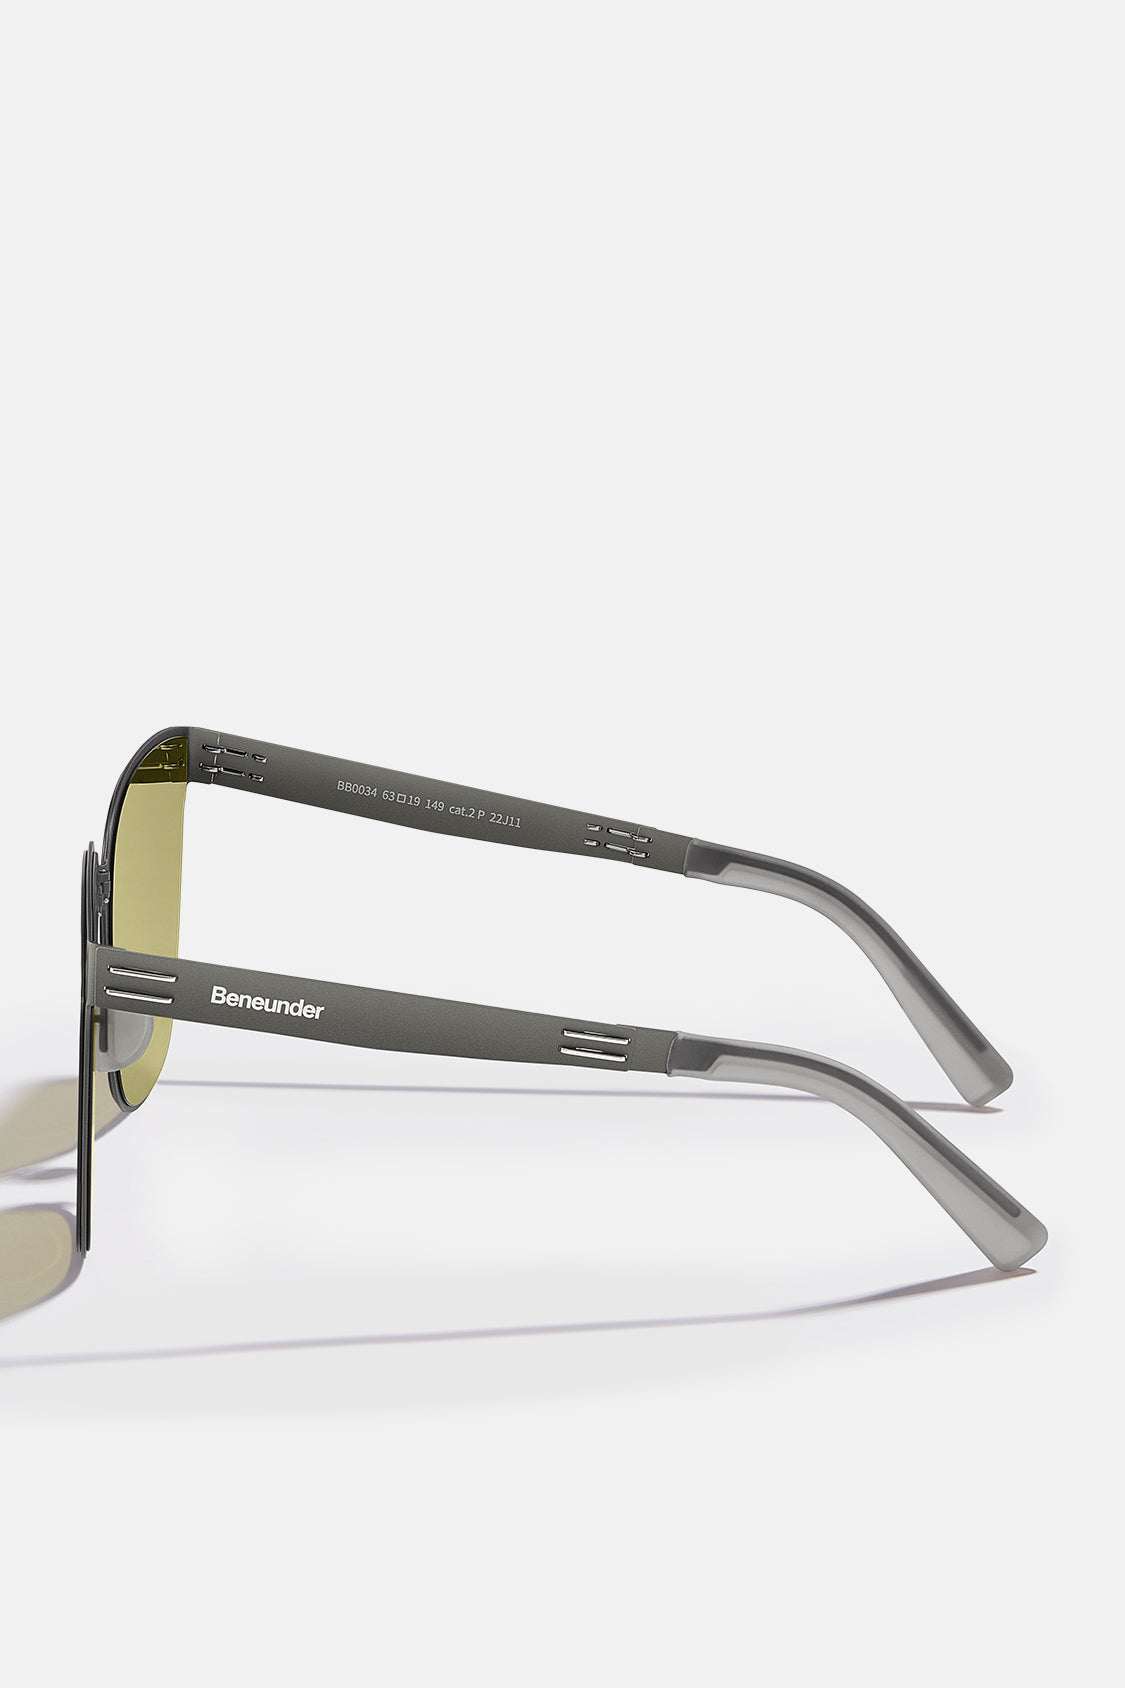 Polarized Folding Sunglasses for Women&Men, Beneunder UV400 Protection  Super Lightweight Designer Square Sunglasses for Driving, Fishing, Hiking,  Golf-Black